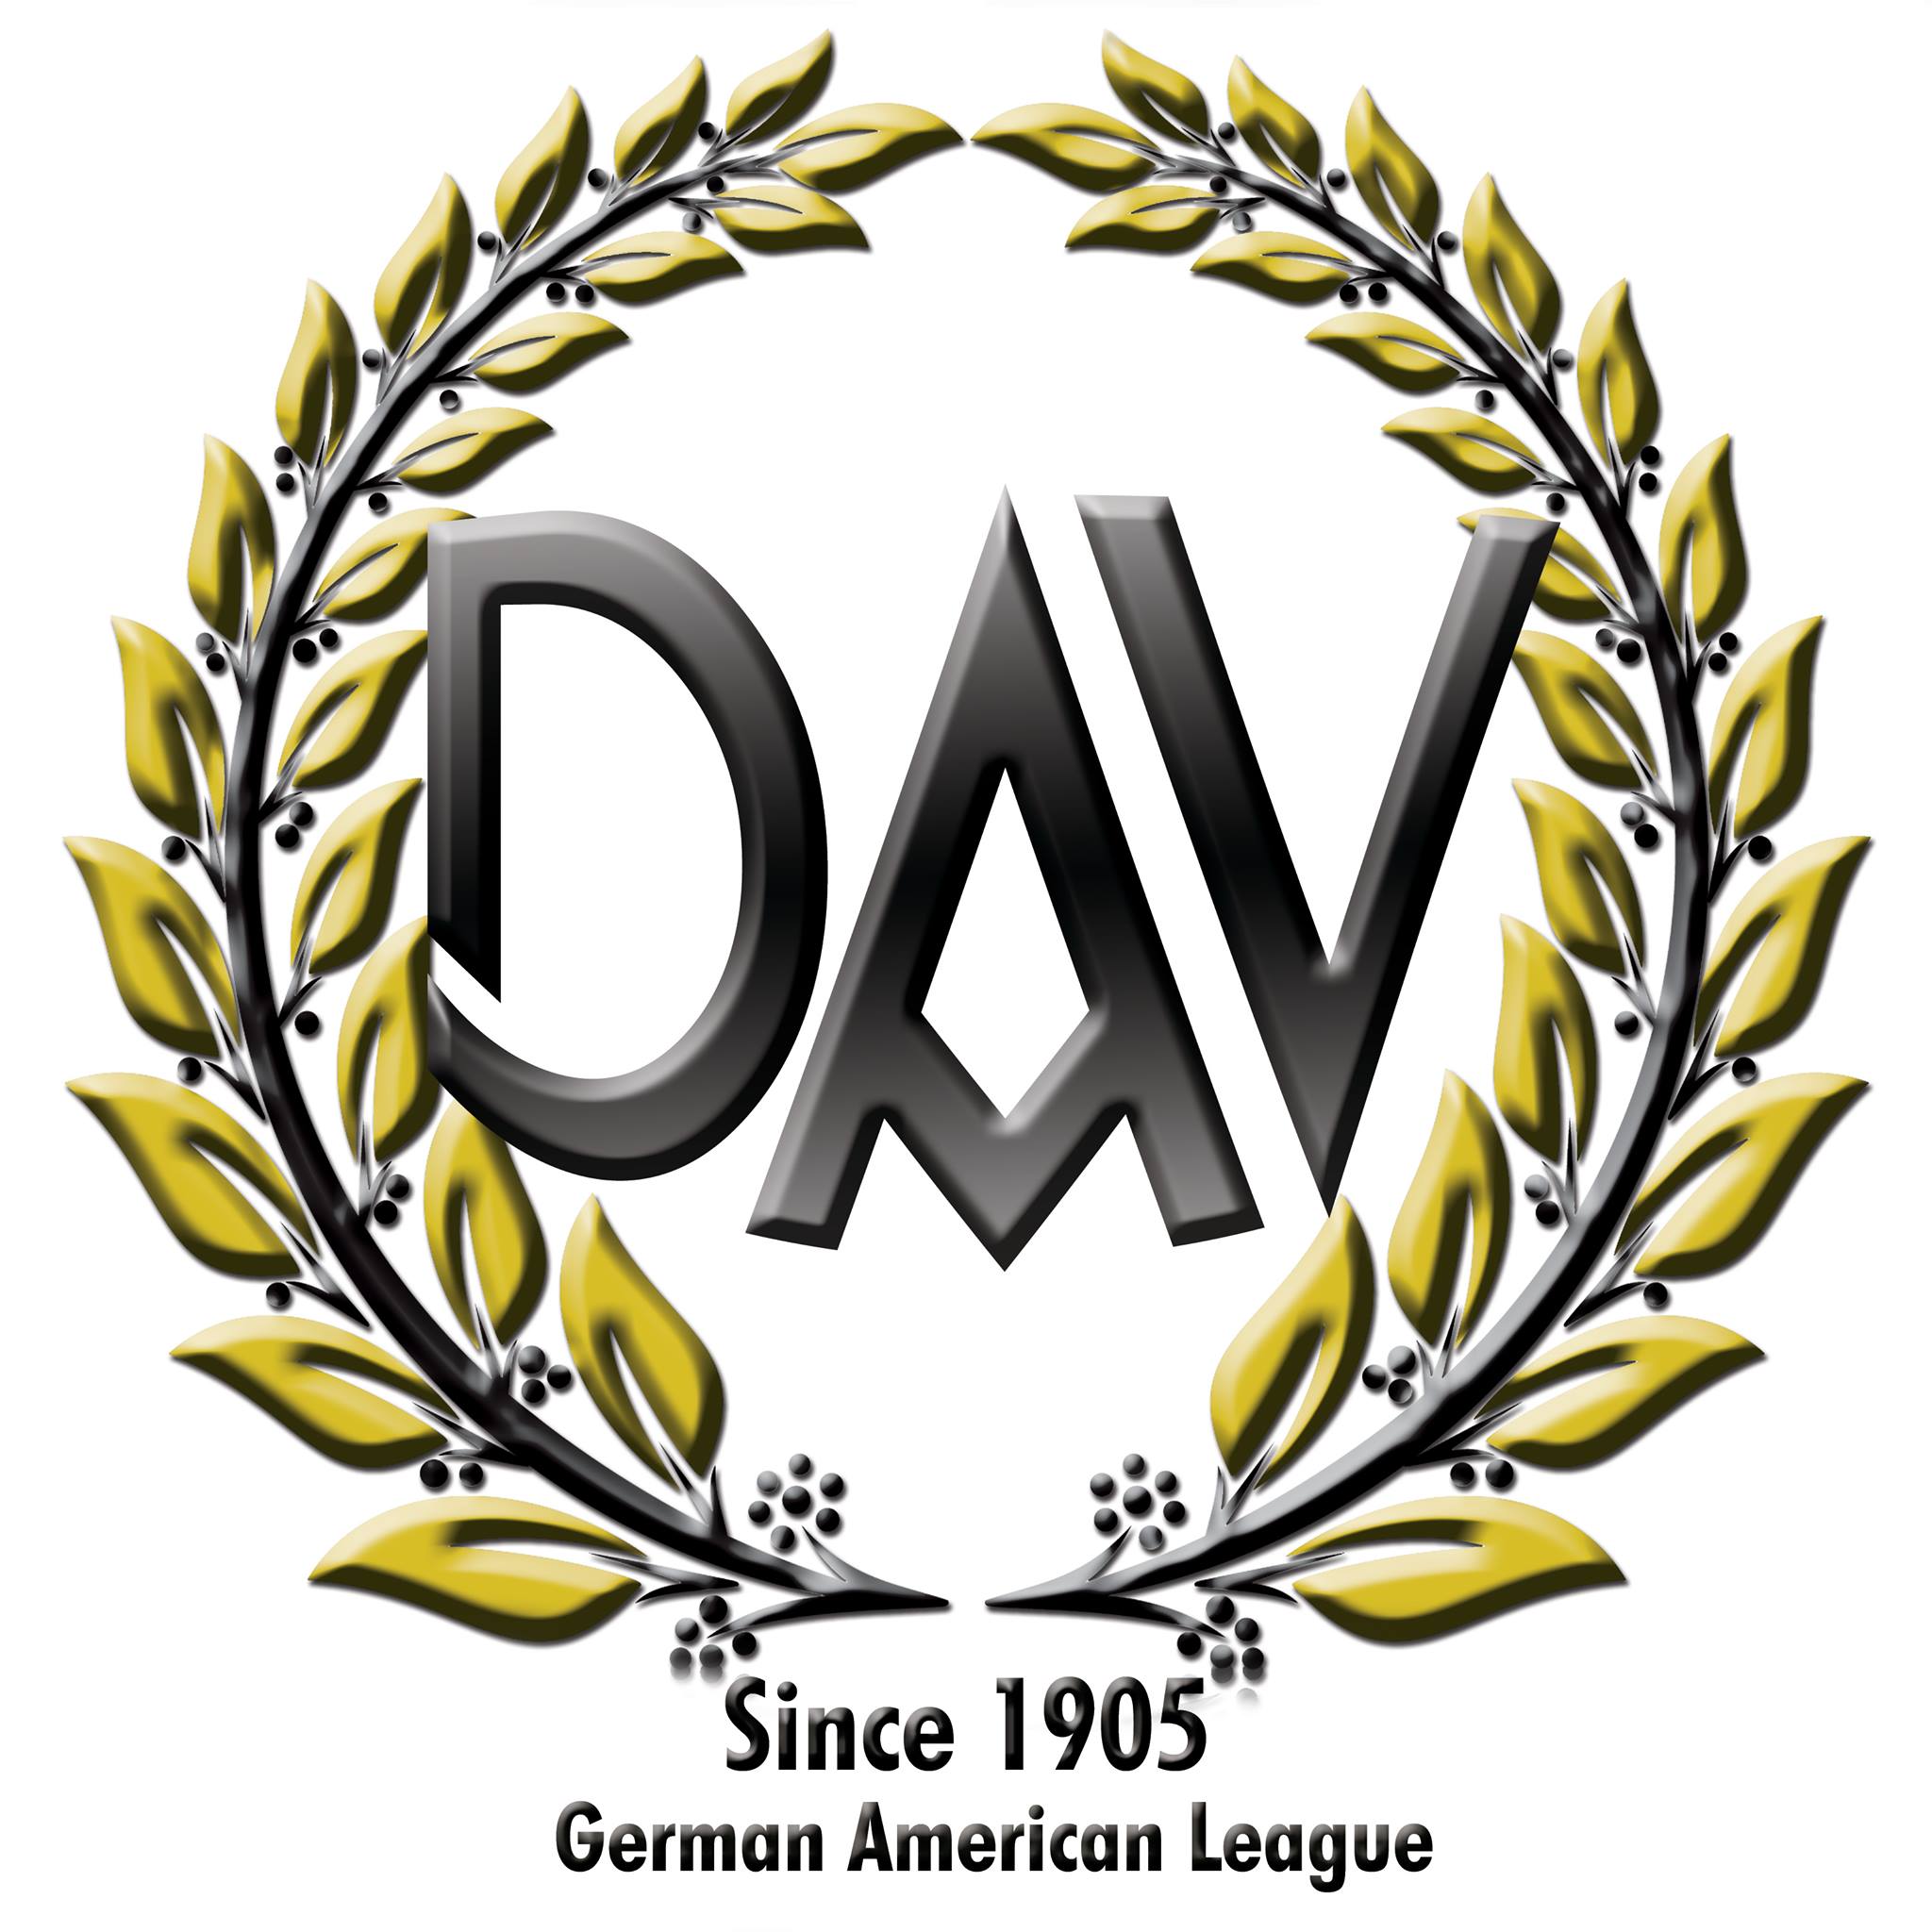 German Speaking Organizations in Torrance California - German-American League of Los Angeles, Inc., Ltd.